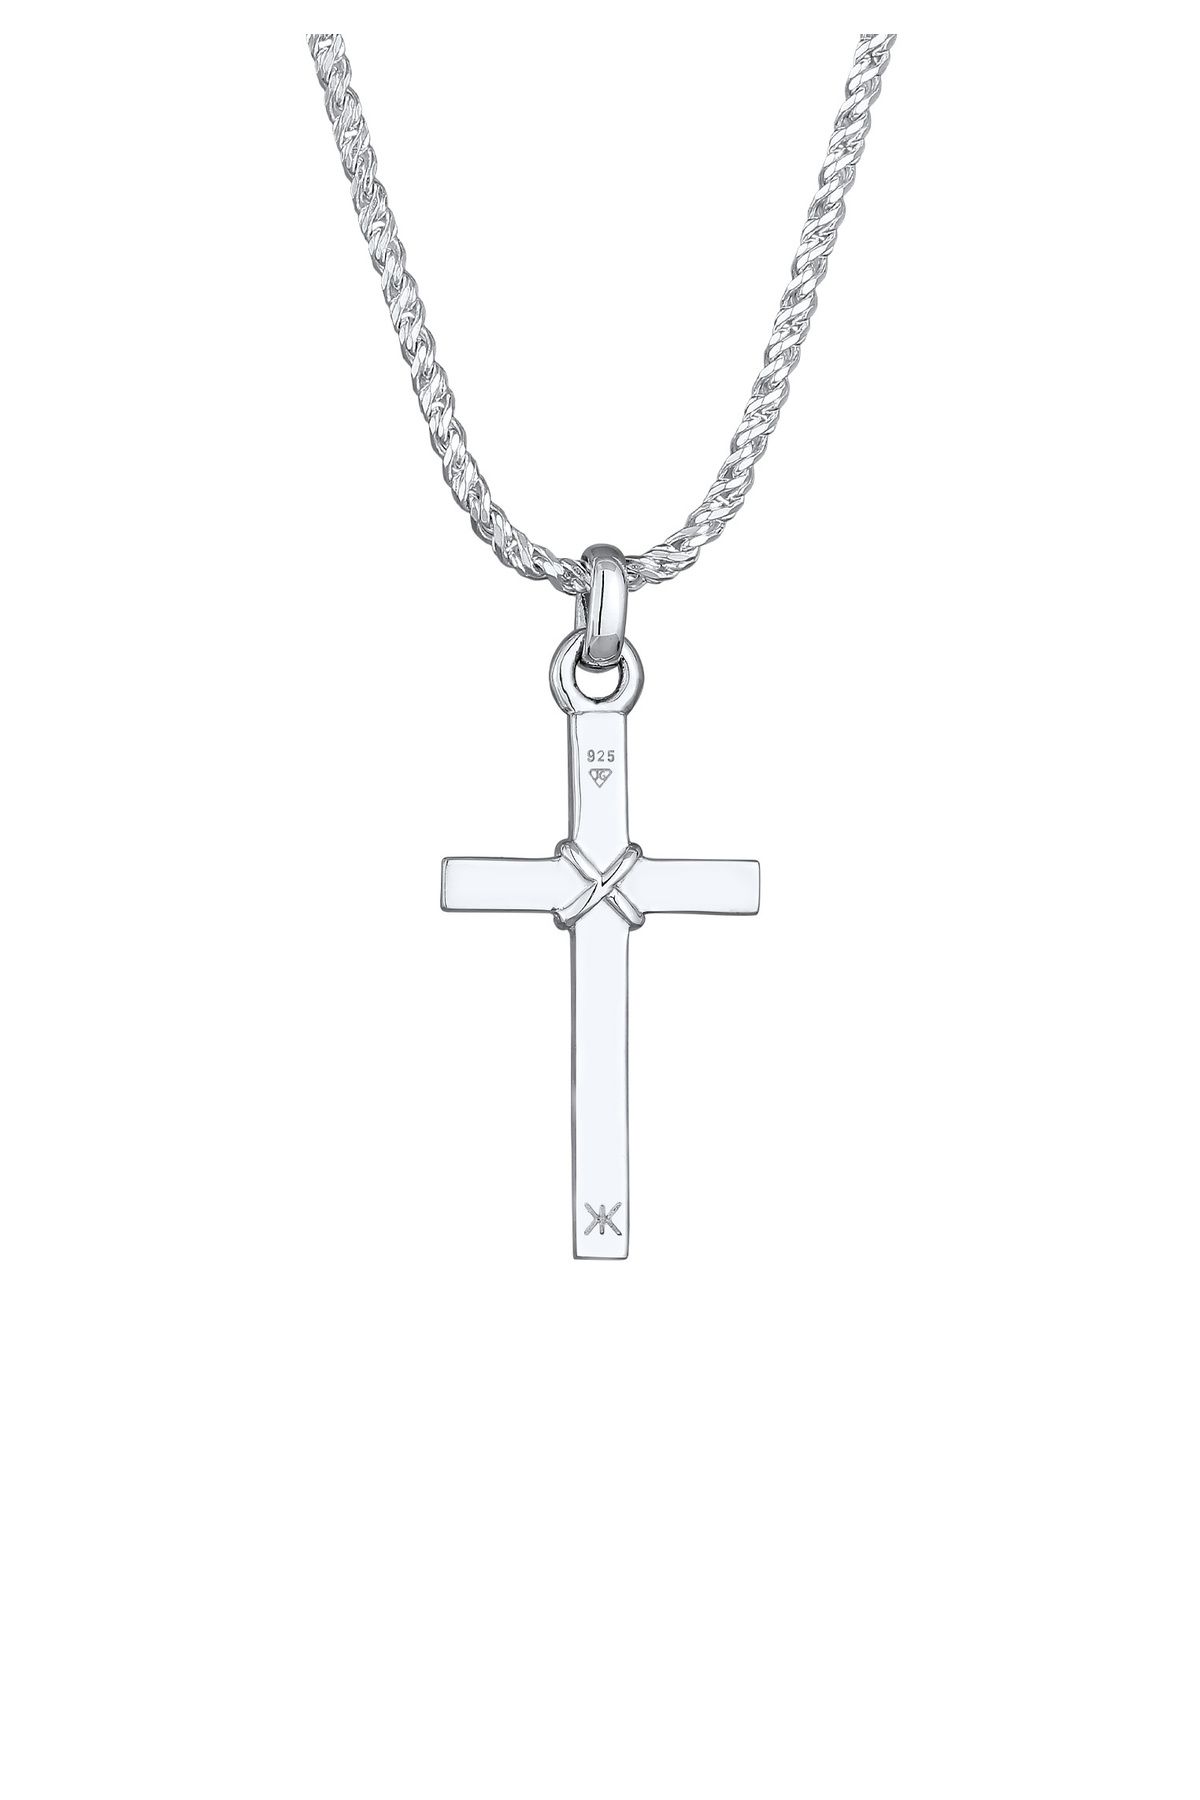 KUZZOI Halskette Kordelkette Herren Trendyol - Kreuz Silber Flach 925